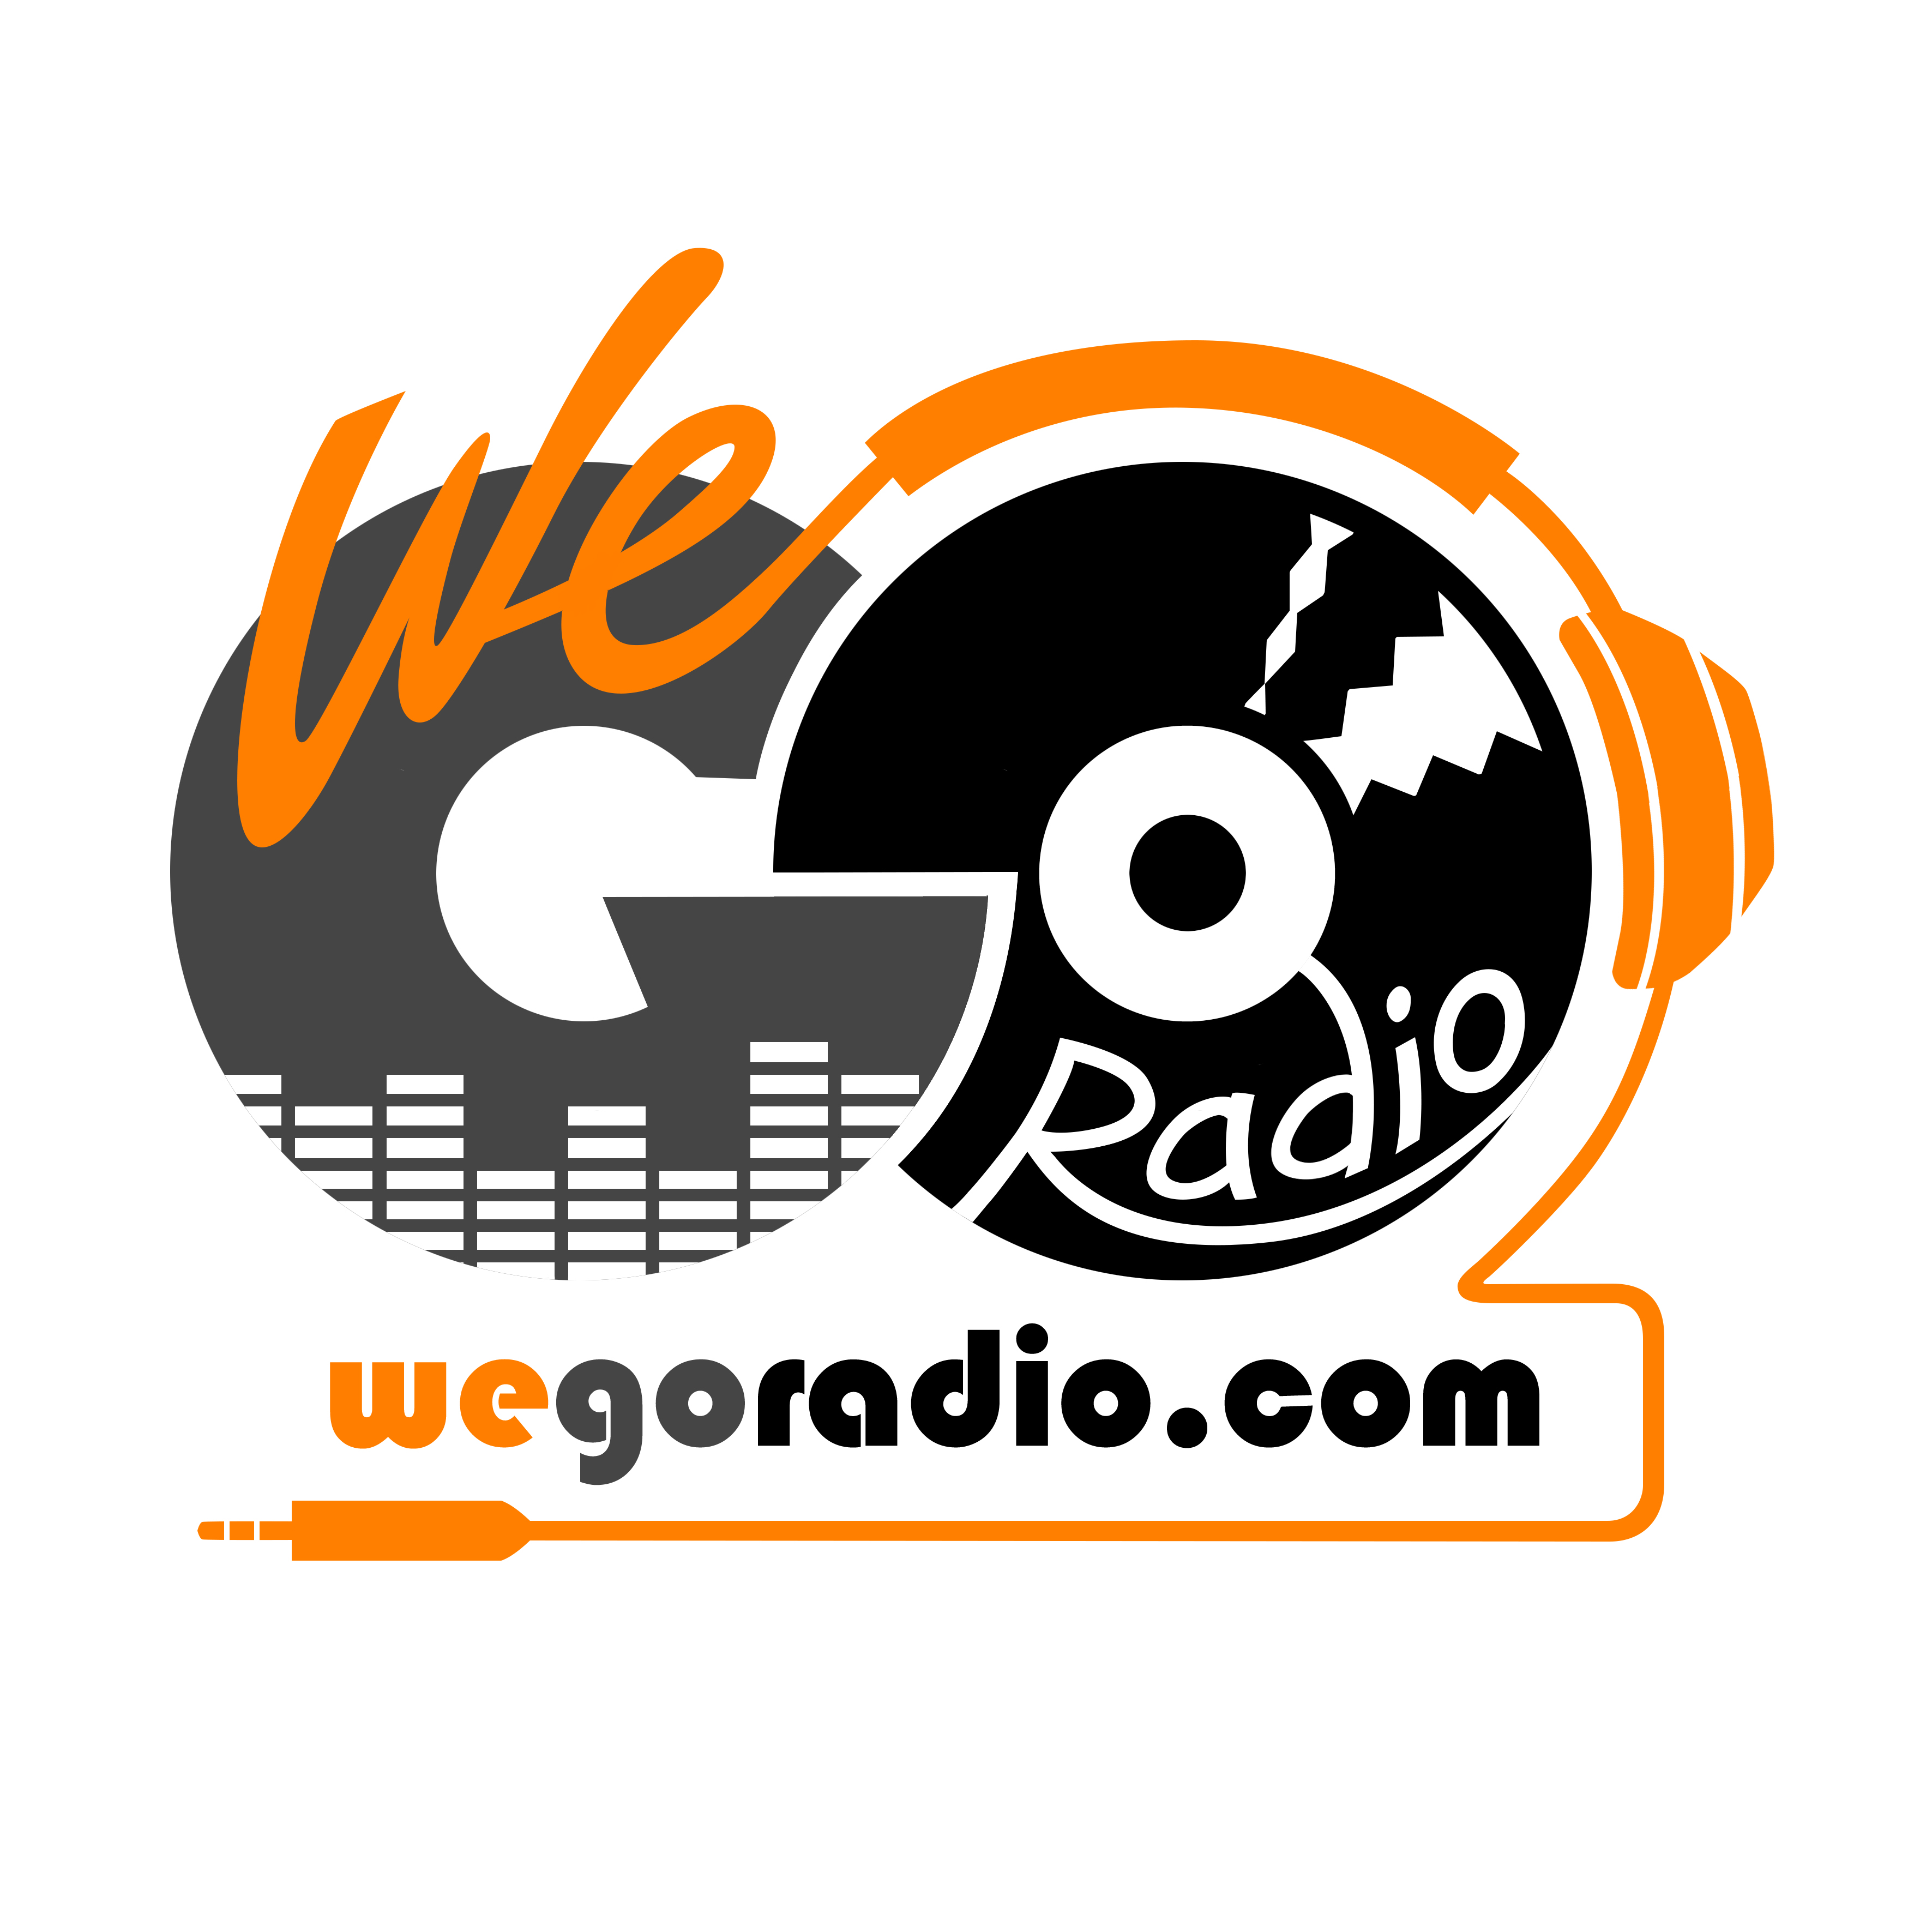 We Go Radio